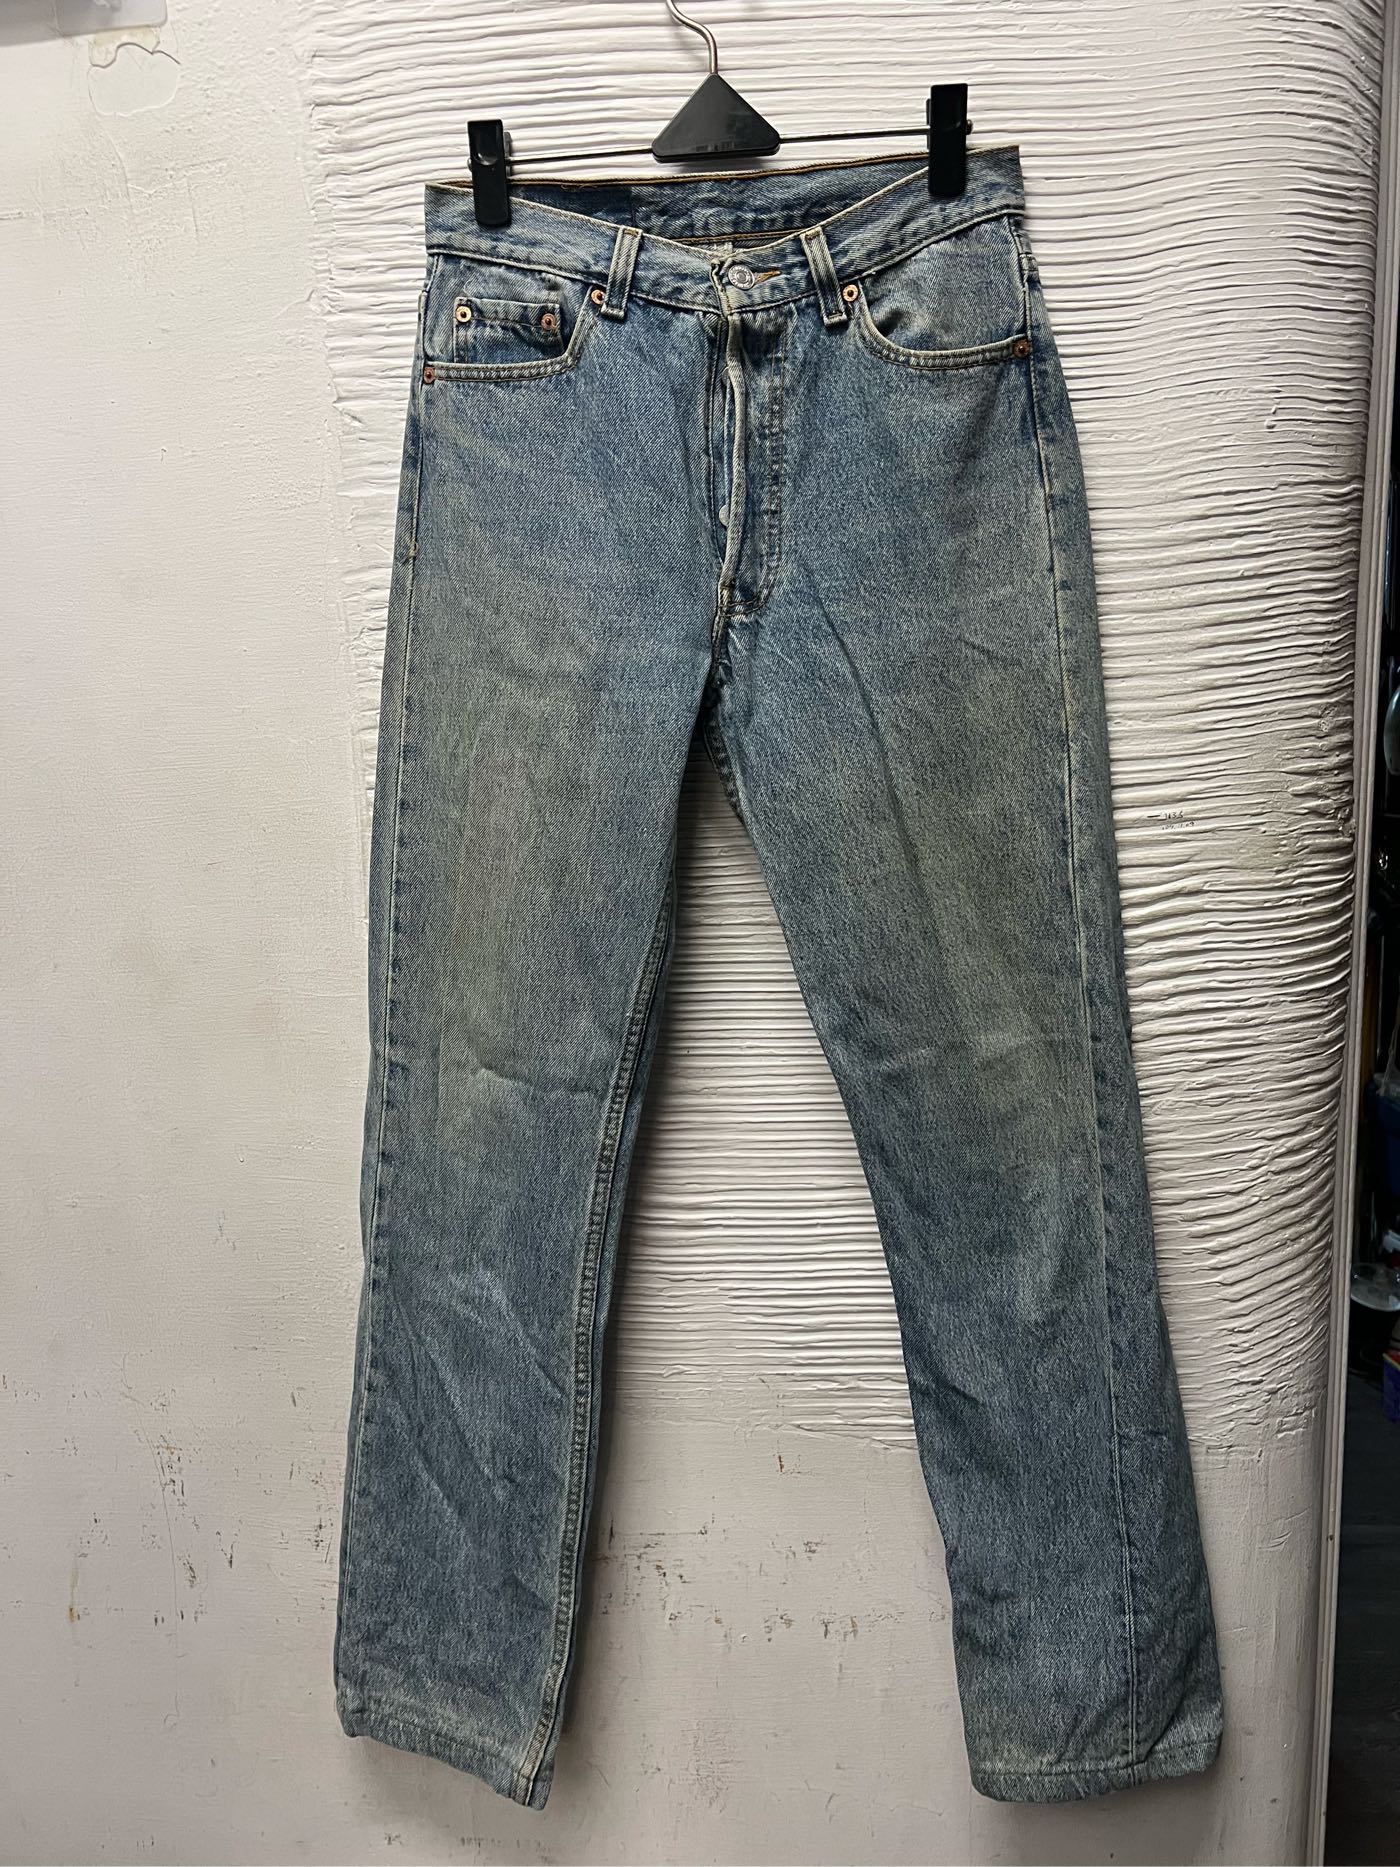 美國廠製Levi's 501直筒牛仔褲直筒褲前排扣W29腰94年版#1063 | Yahoo